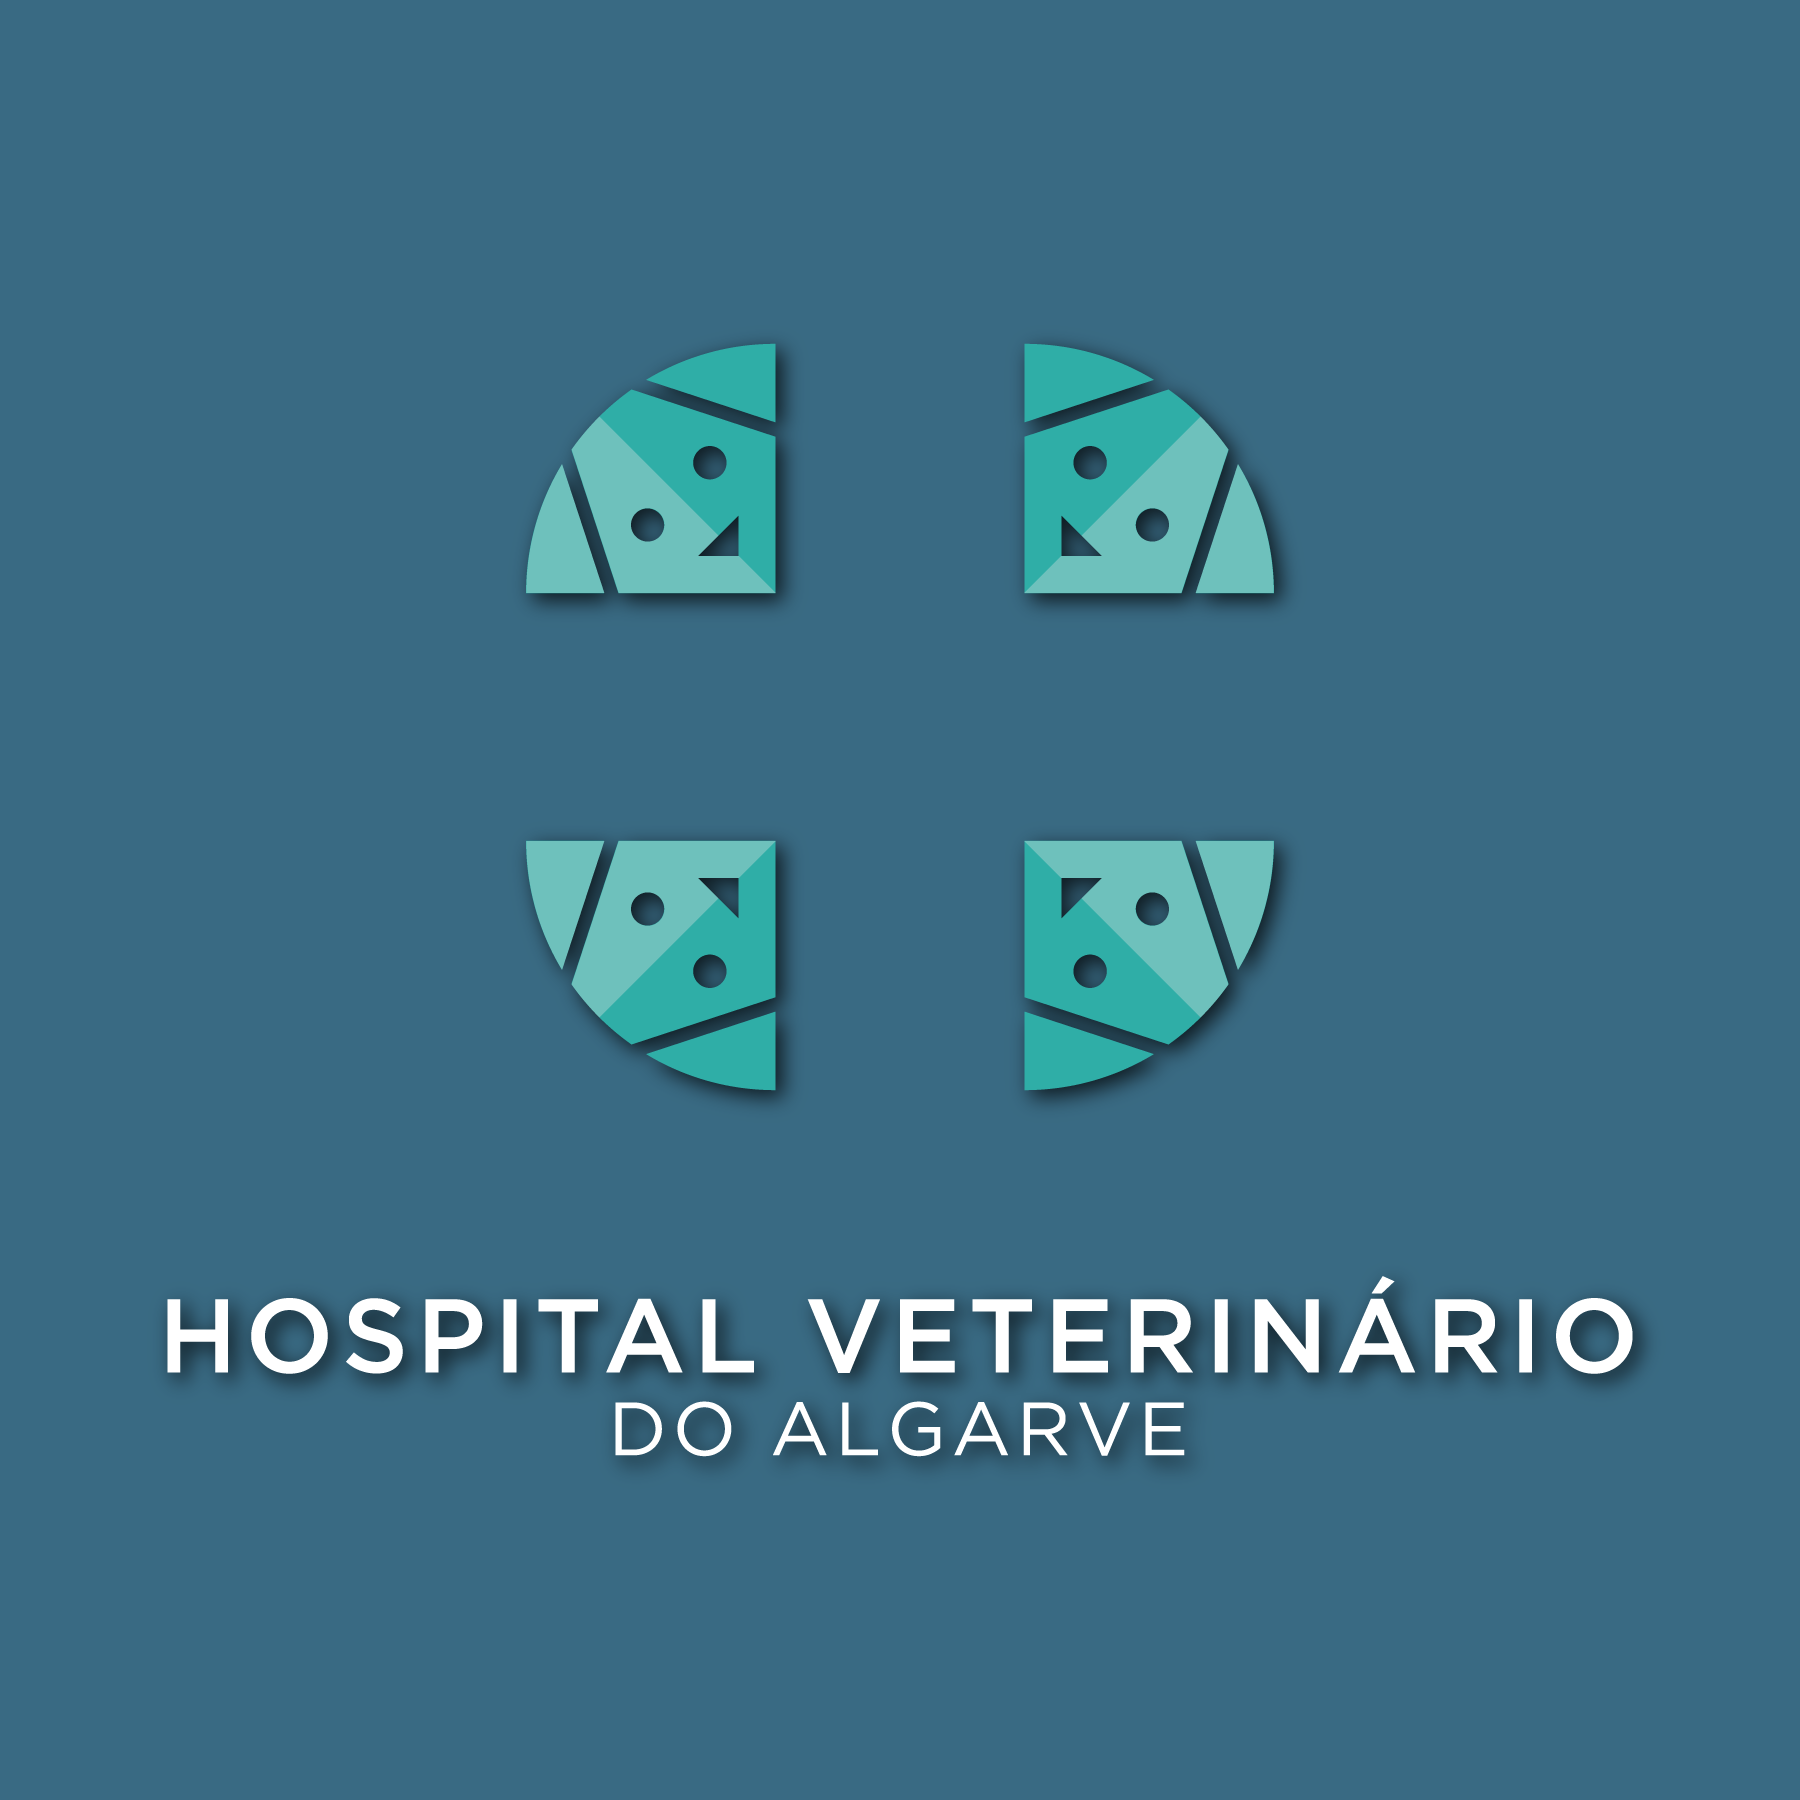 Hosp. Veterinário do Algarve